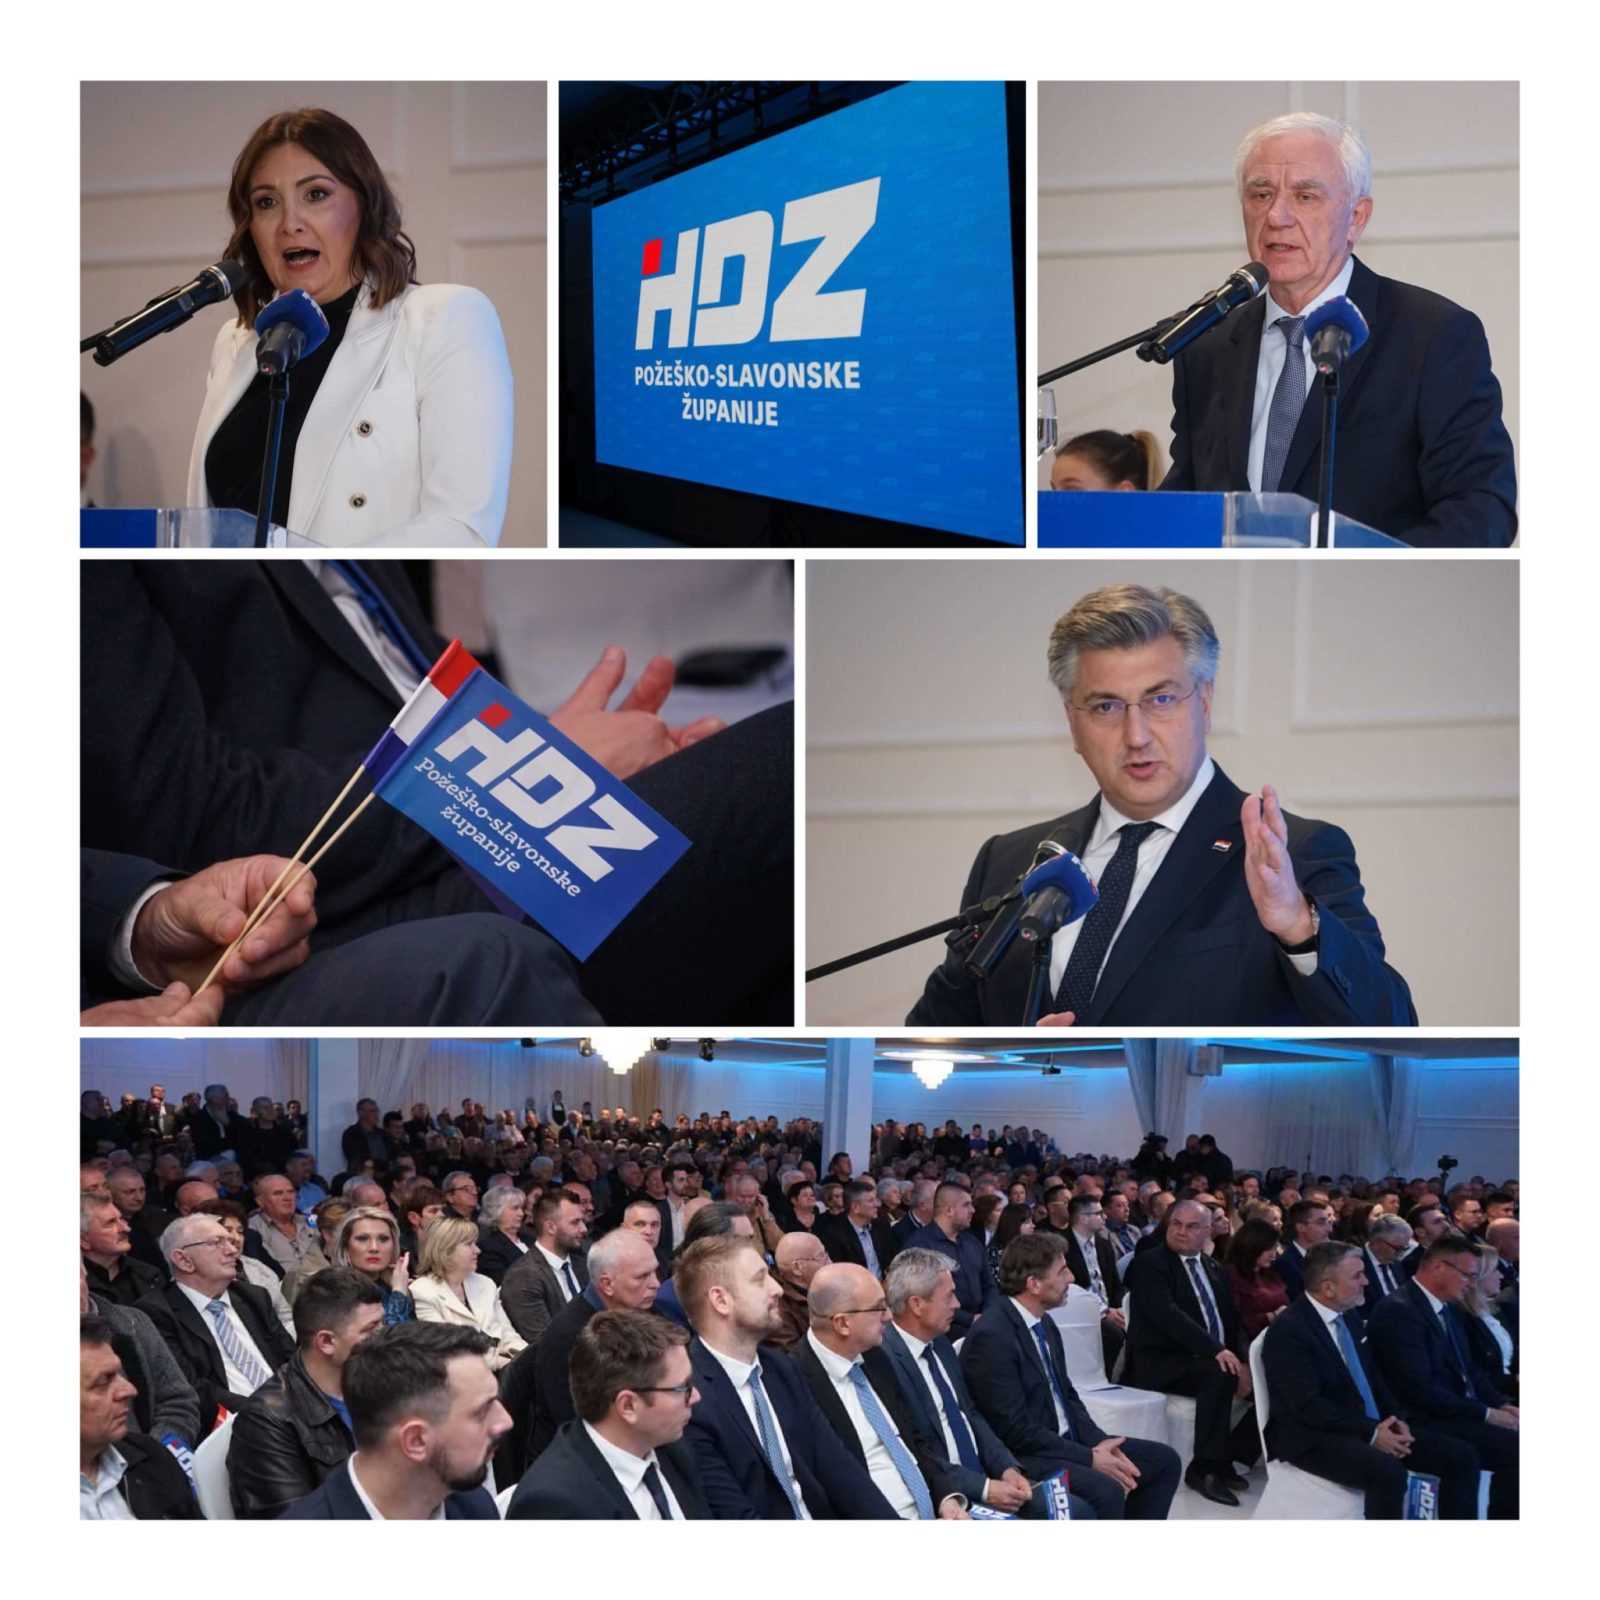 [FOTO] Više od 1000 članova sudjelovalo na 34. obljetnici HDZ-a Požeško-slavonske županije